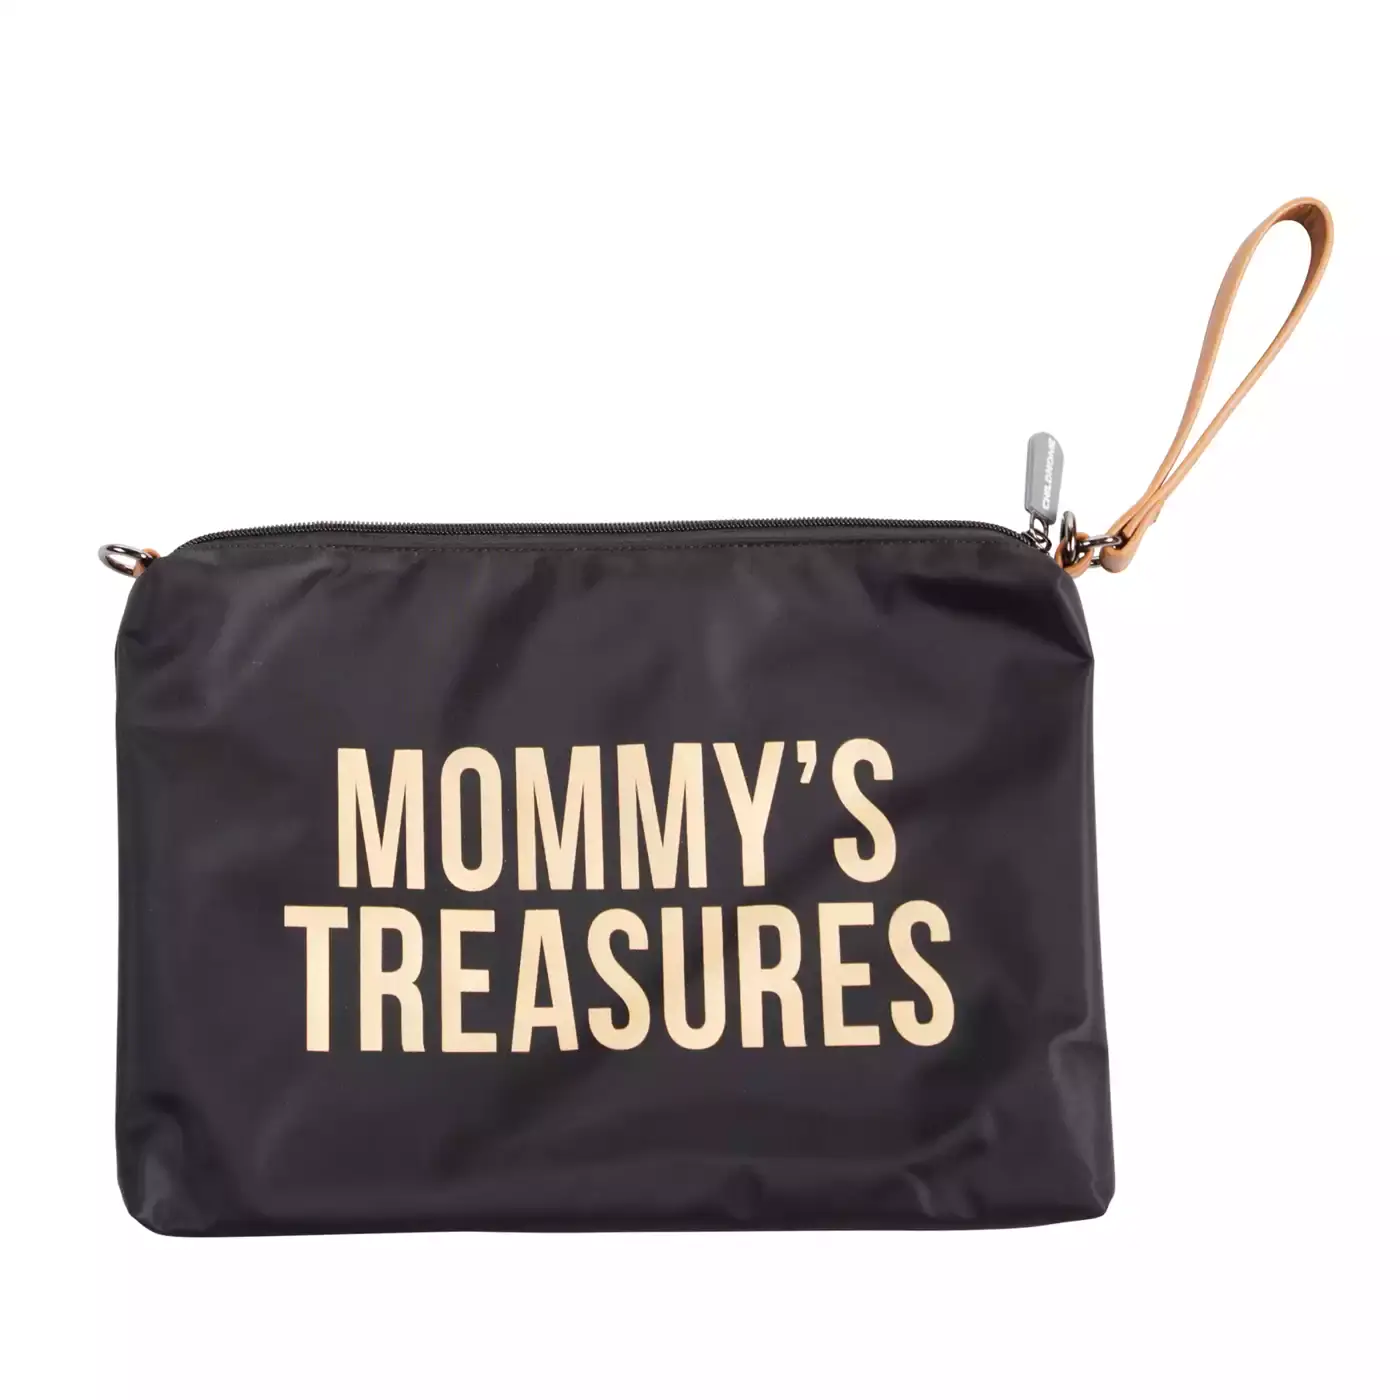 Mommy's Treasures Clutch CHILDHOME Gold Schwarz Gelb 2000580656169 3